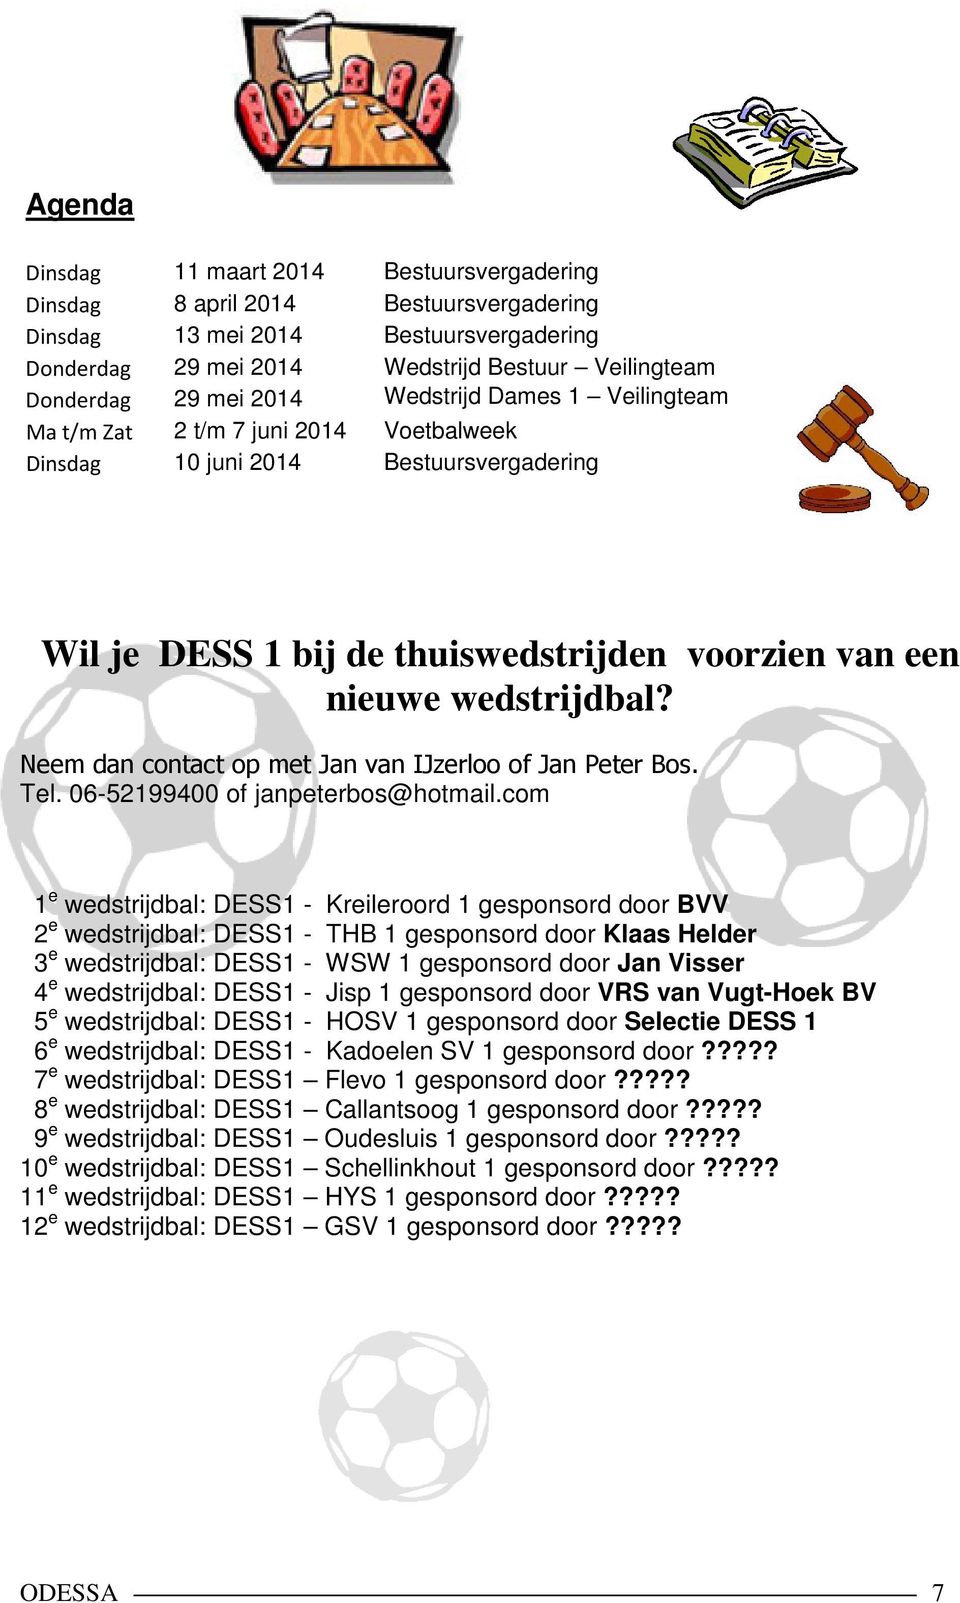 Neem dan contact op met Jan van IJzerloo of Jan Peter Bos. Tel. 06-52199400 of janpeterbos@hotmail.